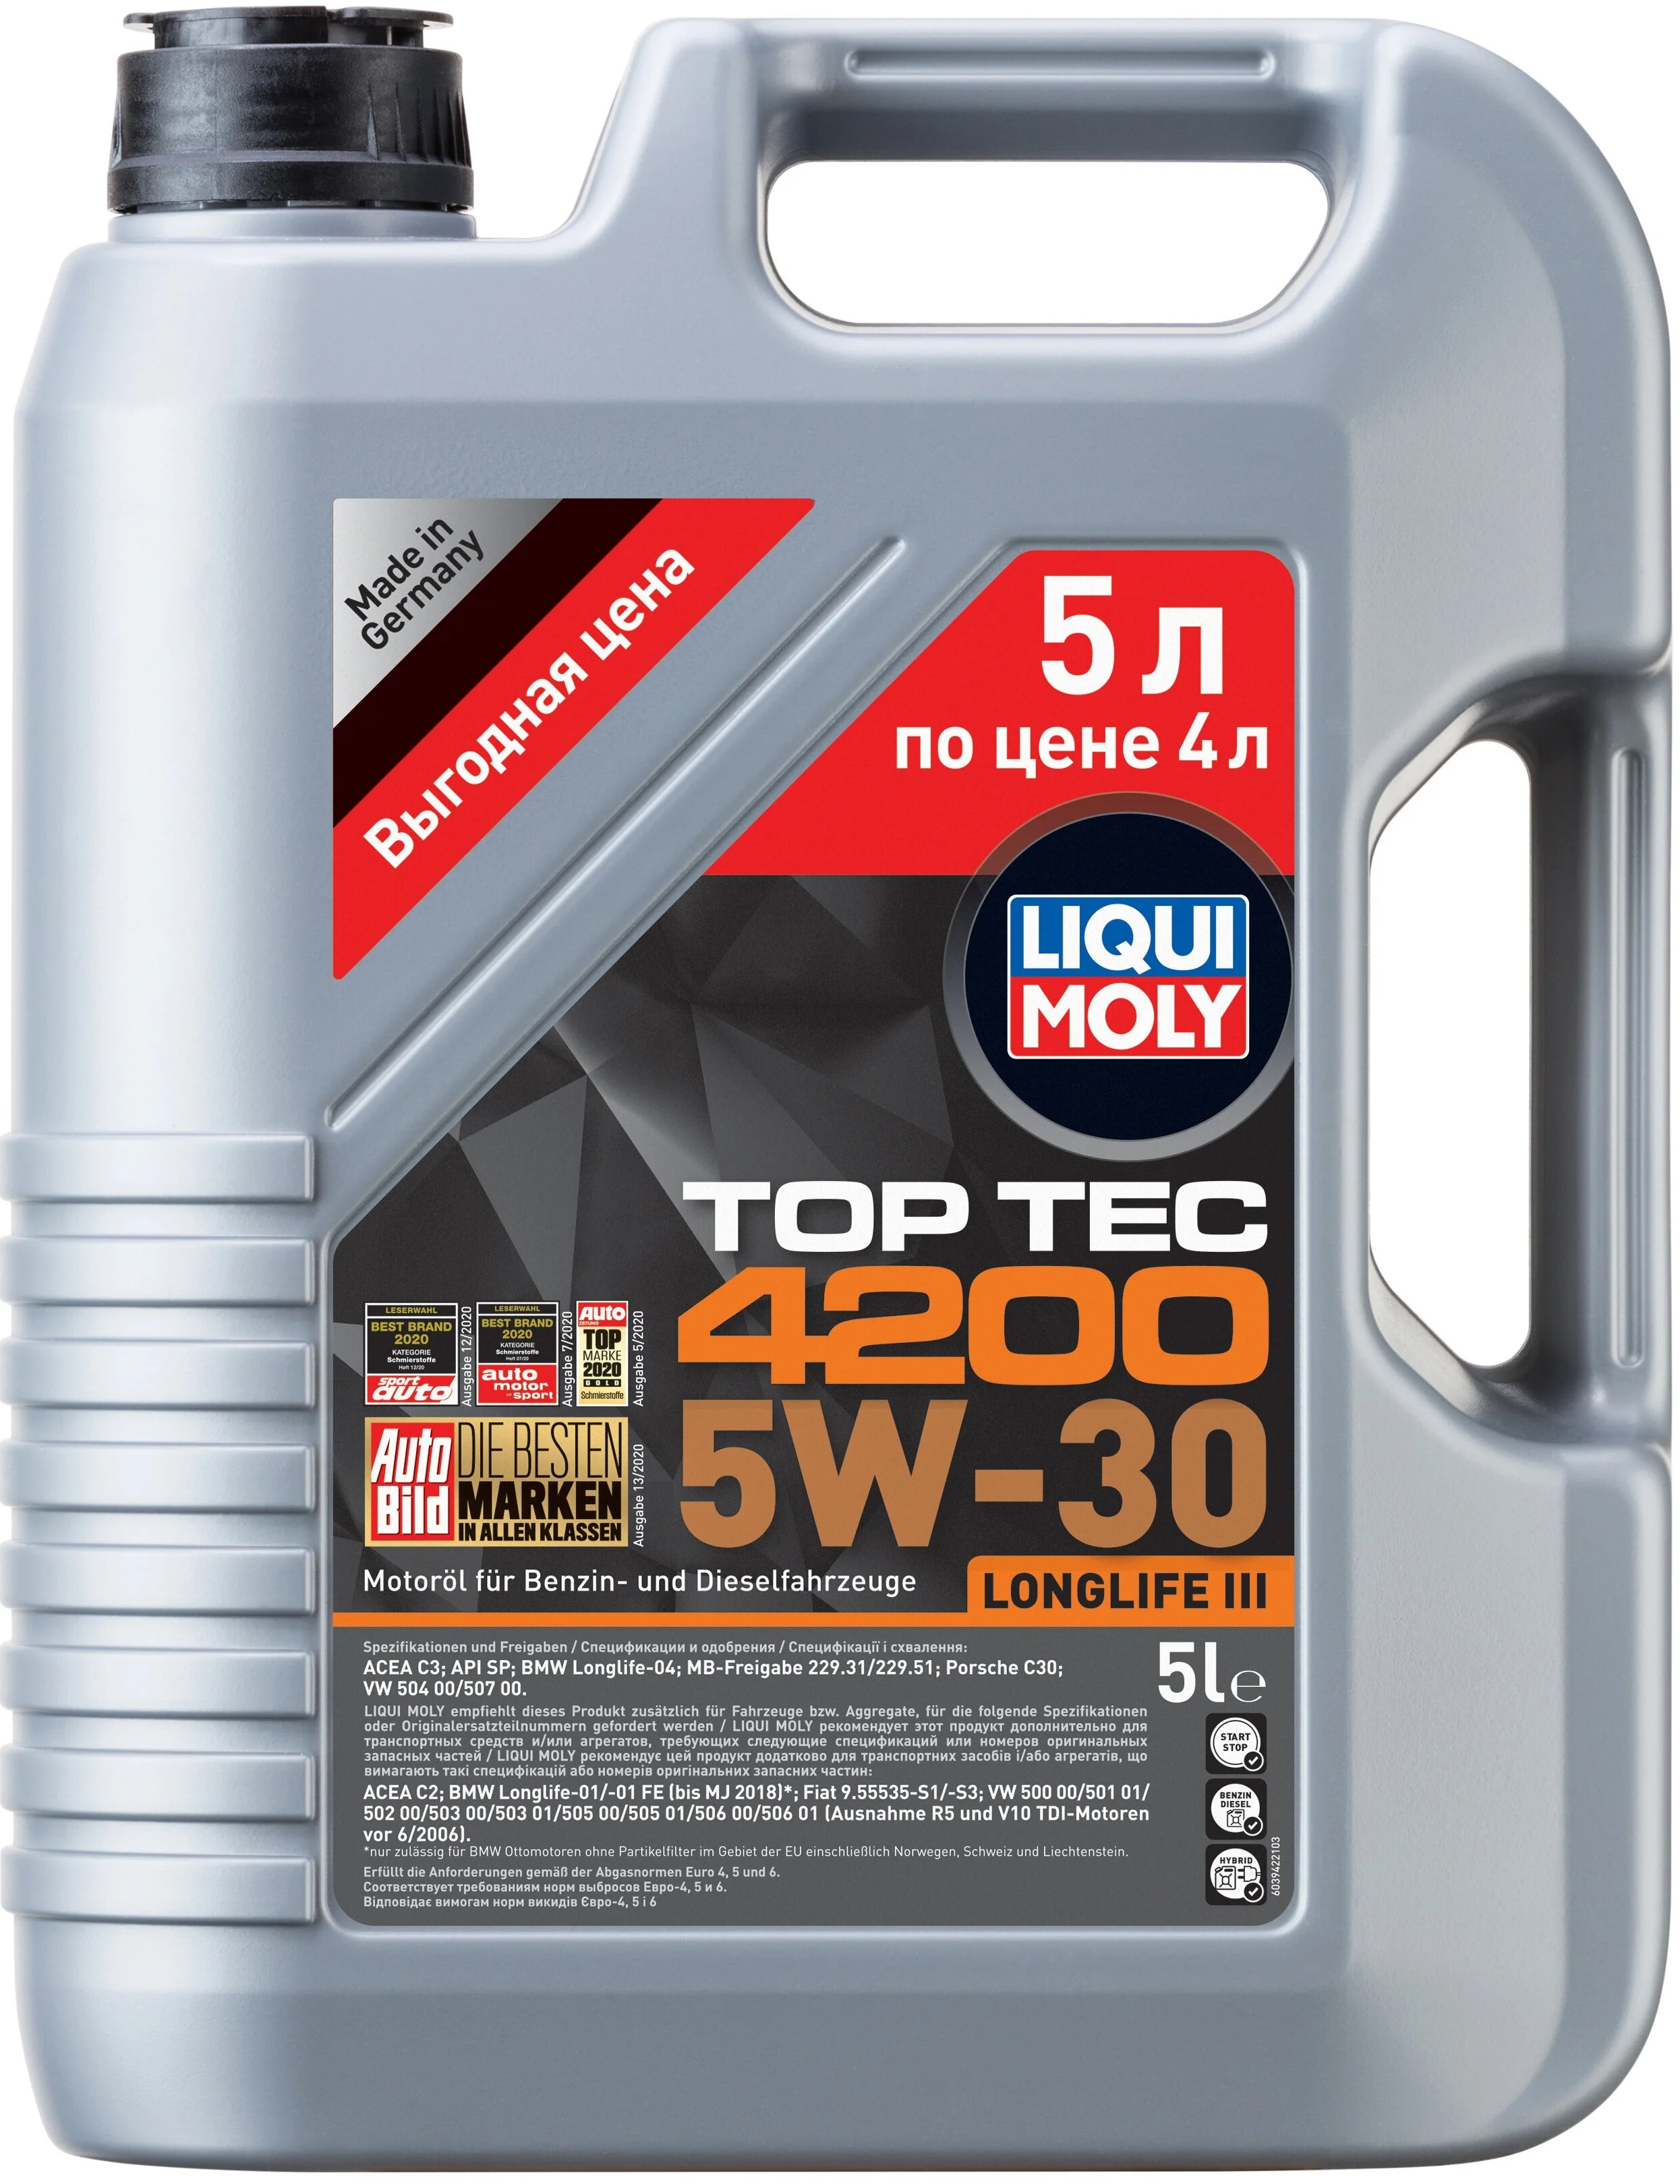 Моторное масло LIQUI MOLY Top Tec 4200 5W-30 5л. (Акция)